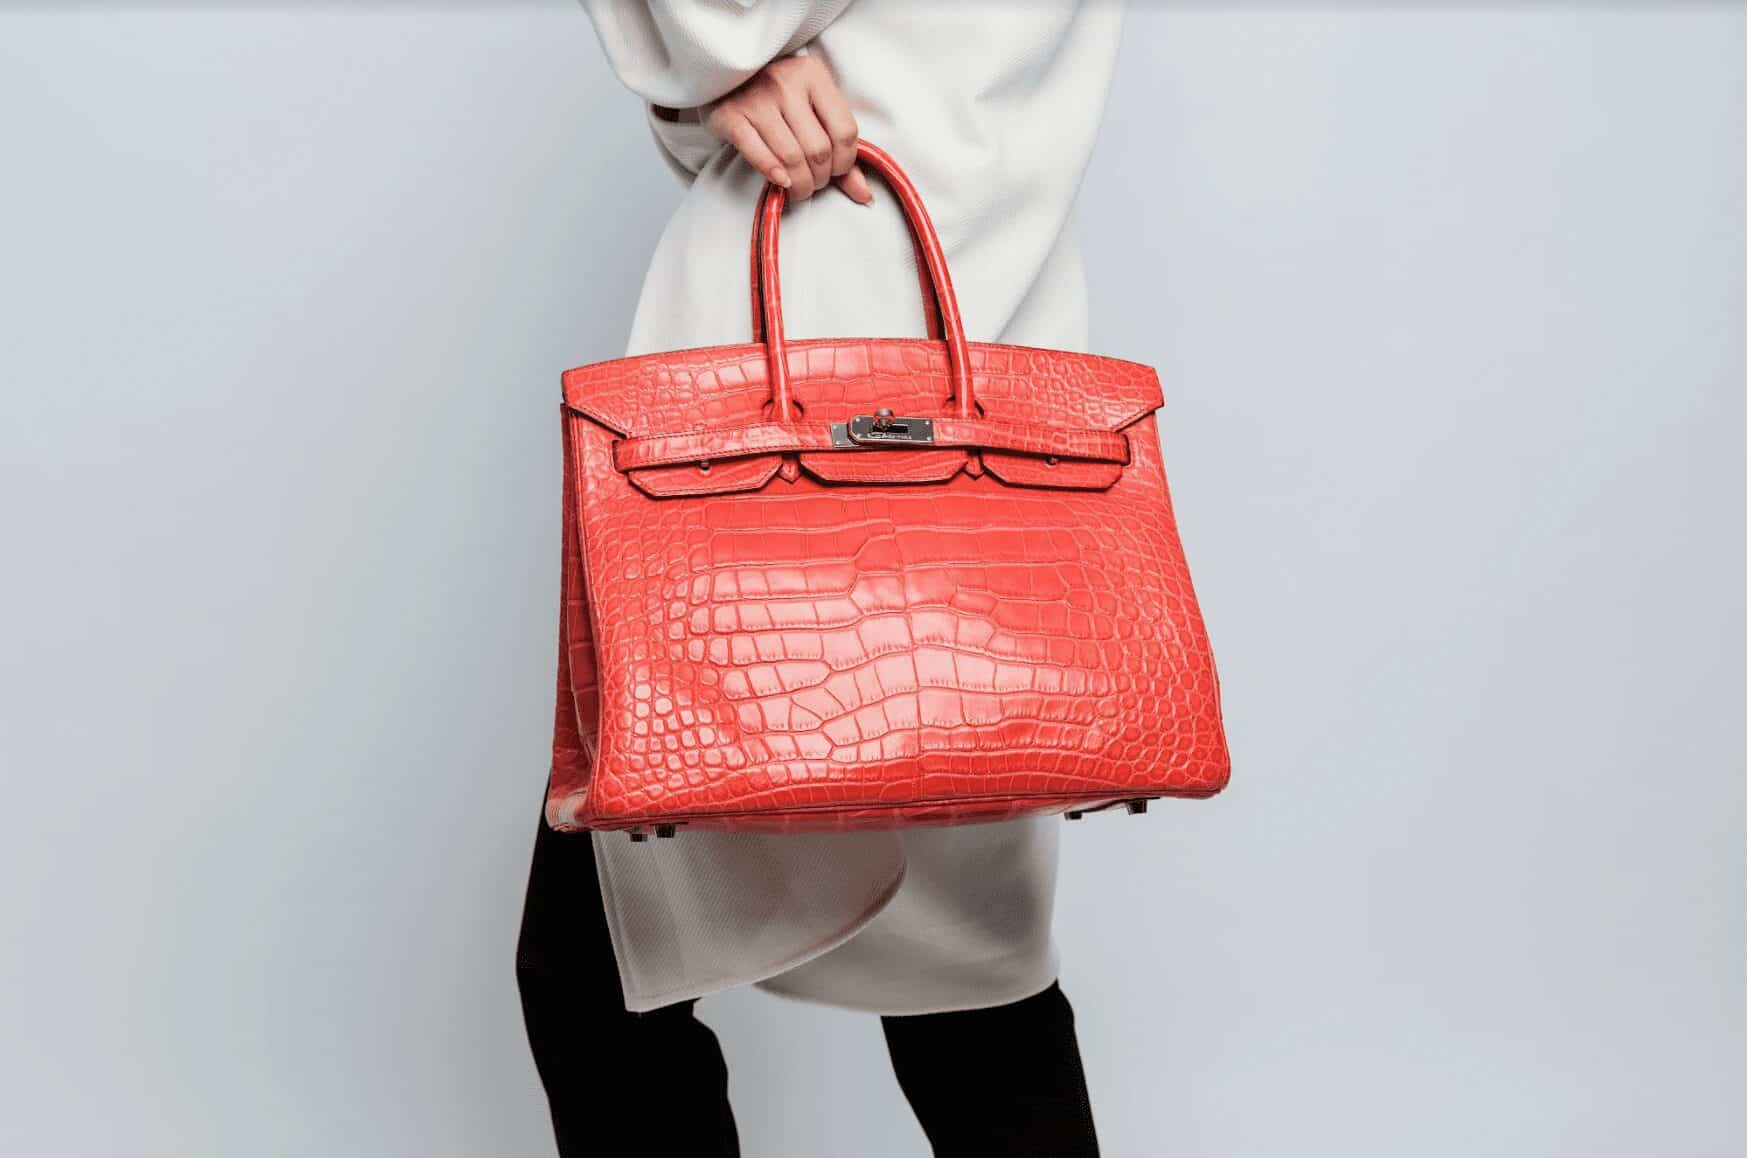 Top 4 Factors That Affect An Hermès Bag’s Resale Price